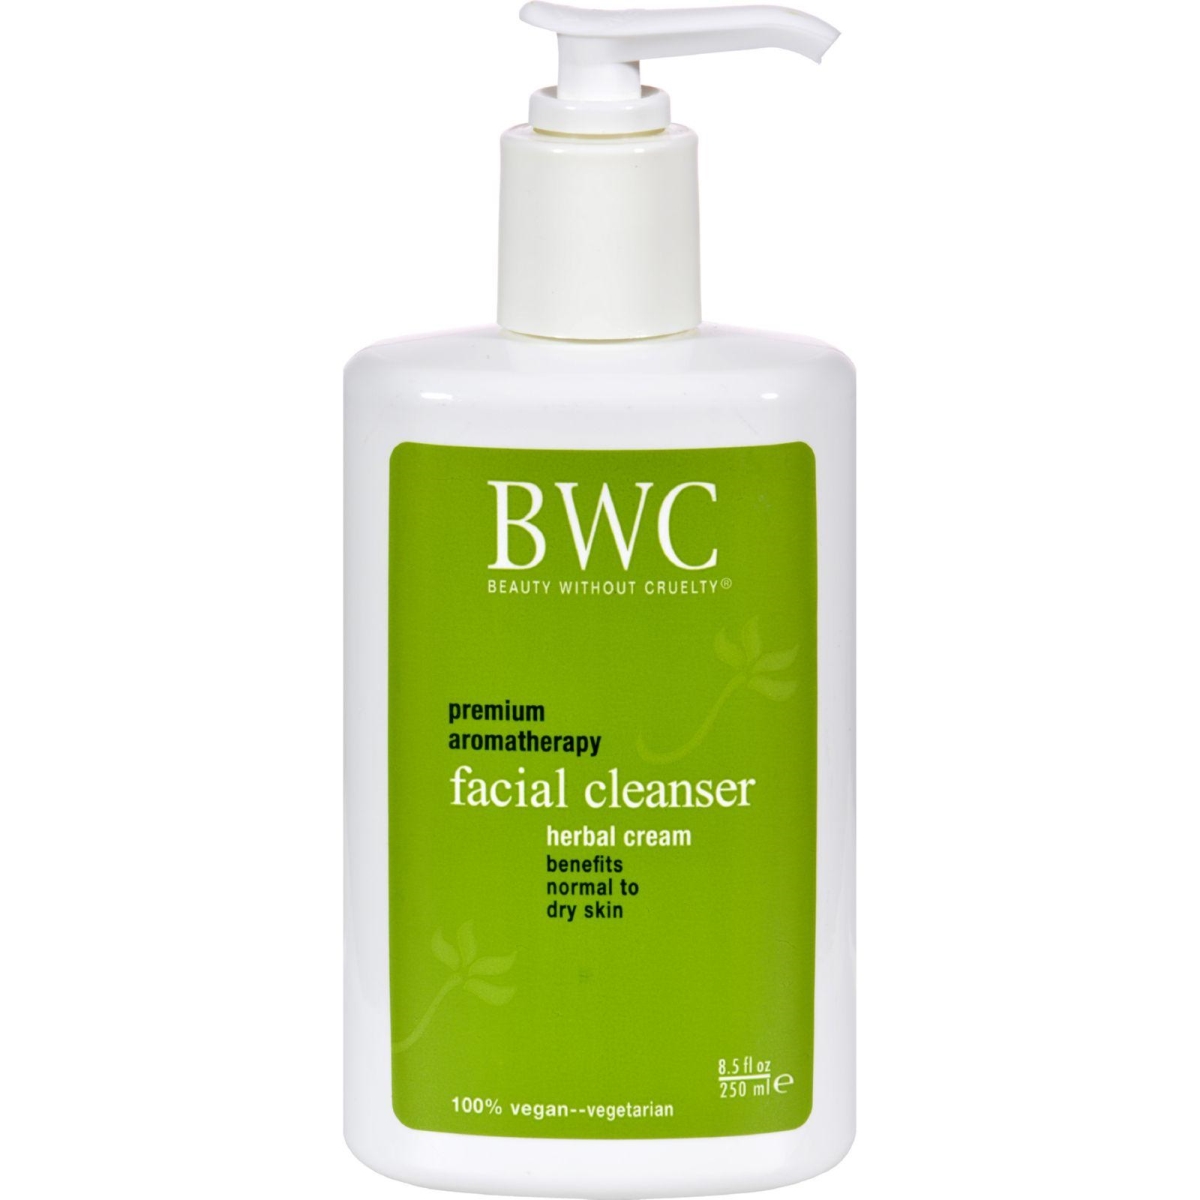 Hg0536649 8.5 Fl Oz Facial Cleanser Herbal Cream